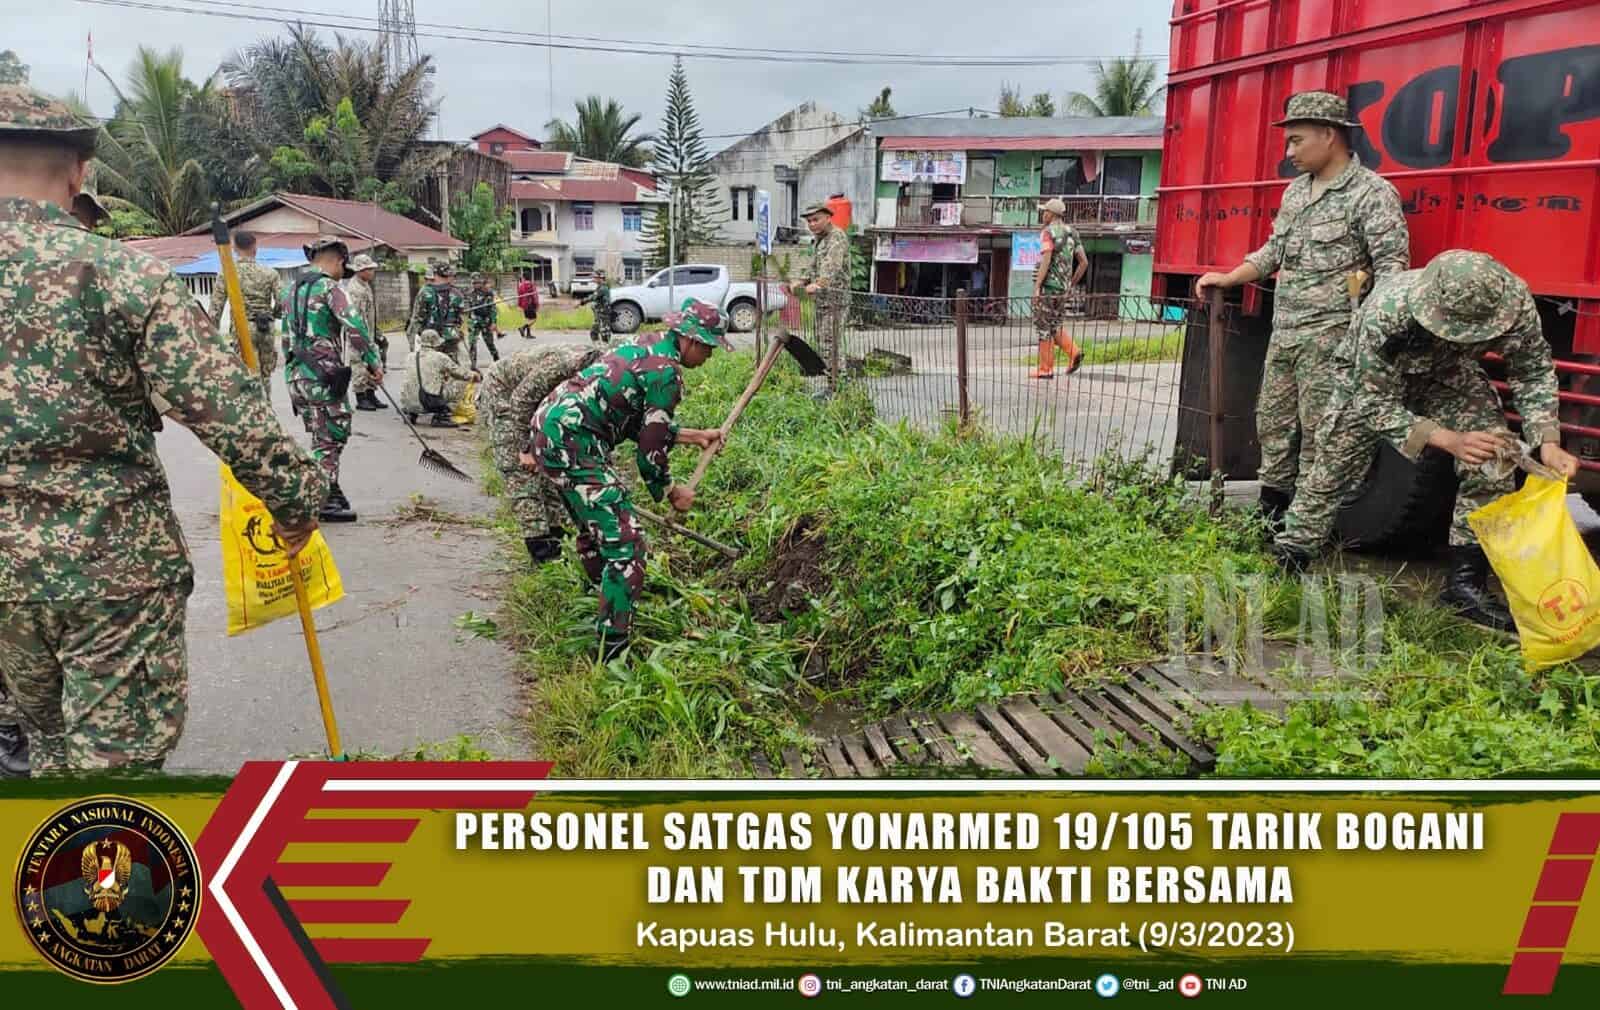 Personel Satgas Yonarmed 19/105 Trk Bogani Bersama TDM Karya Bakti Bersama Di Perbatasan